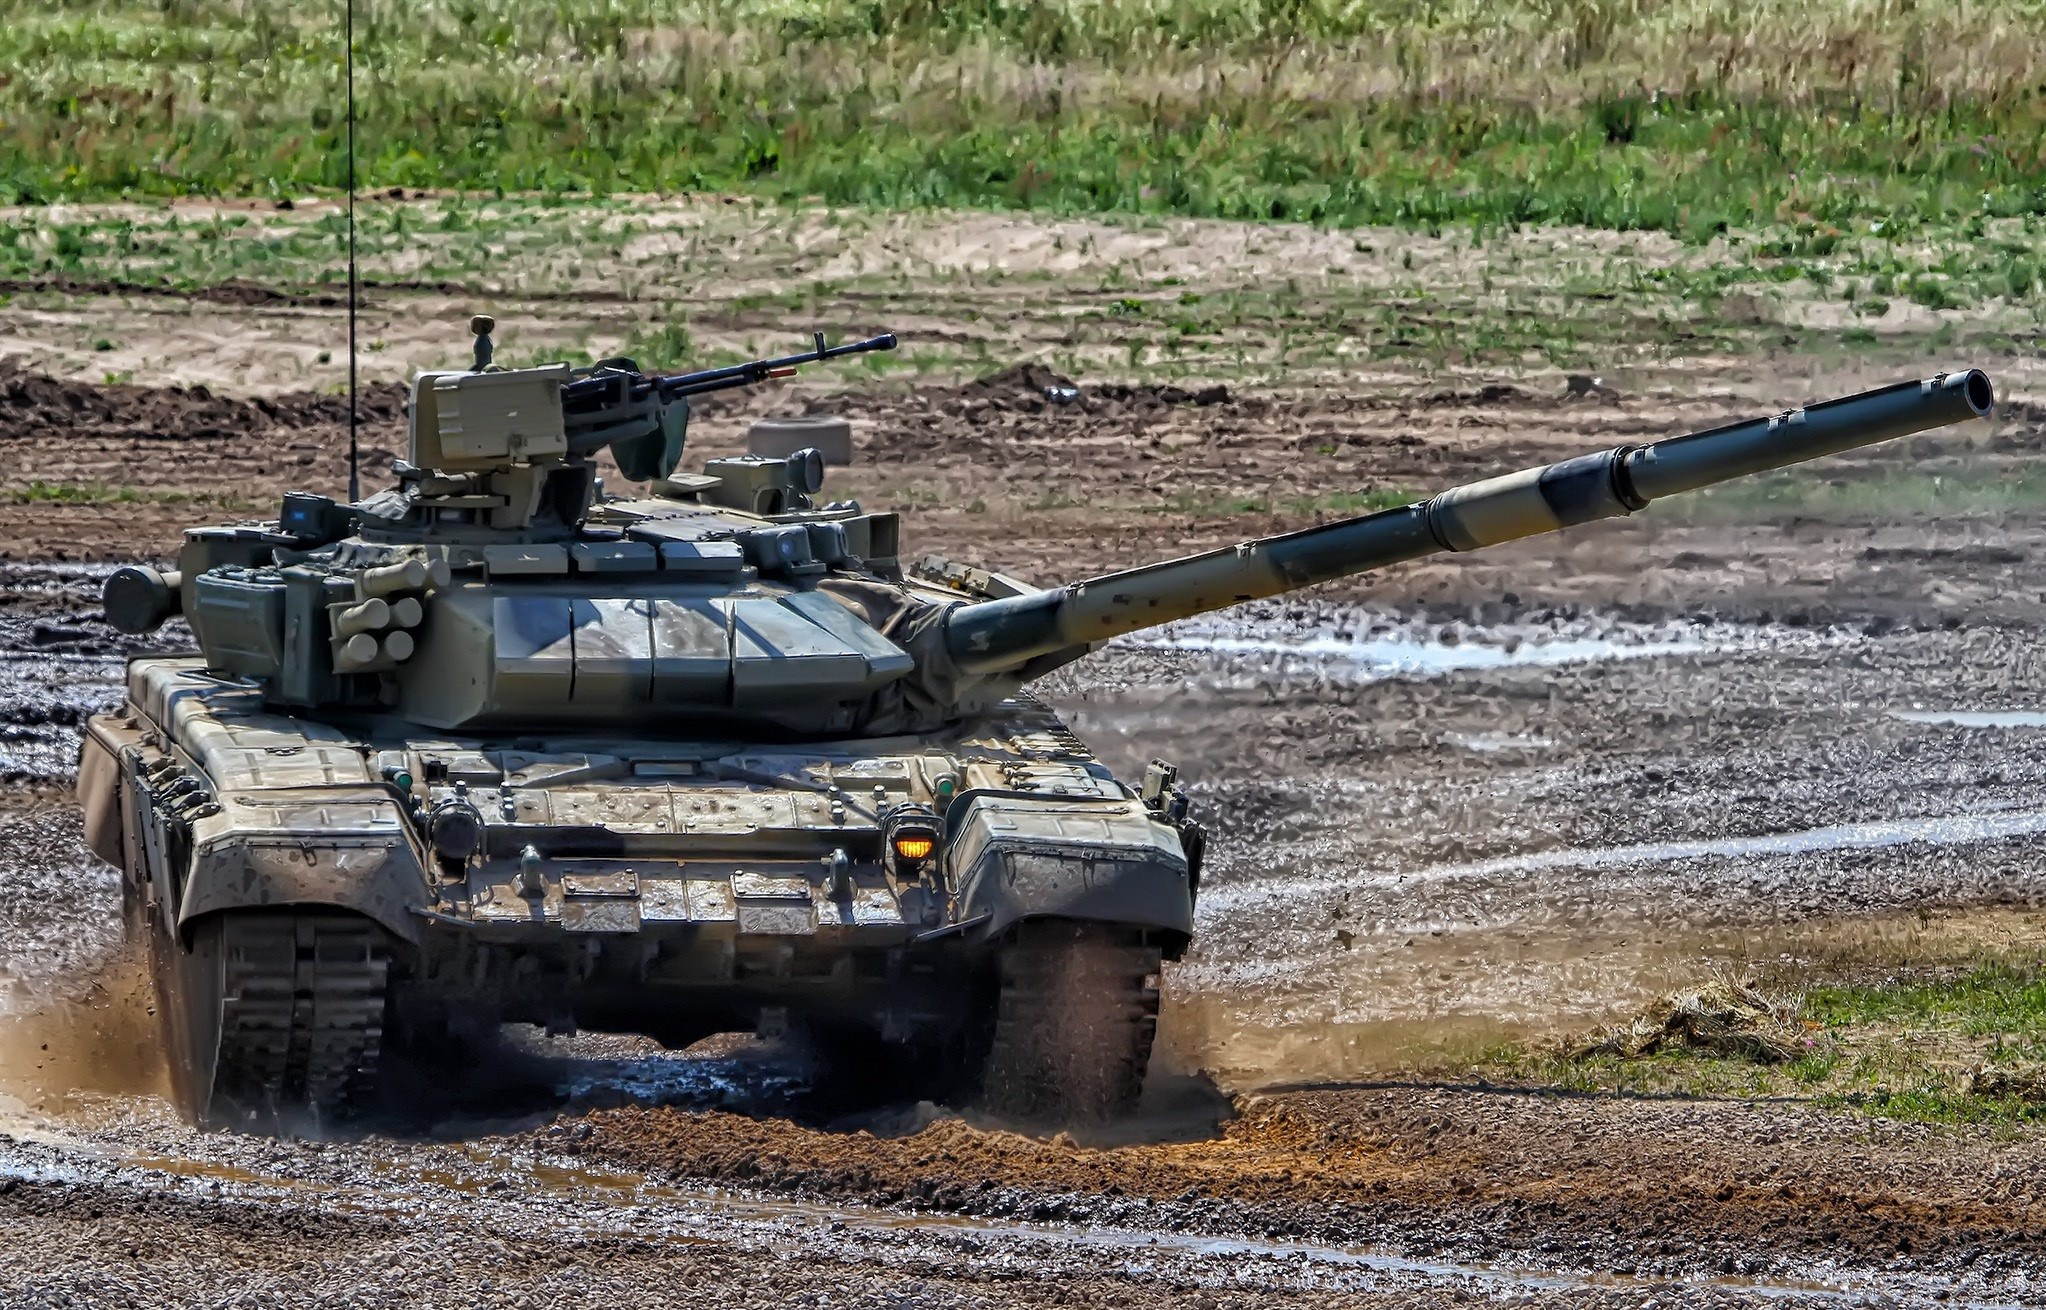 Основной боевой танк т-90ам (россия)